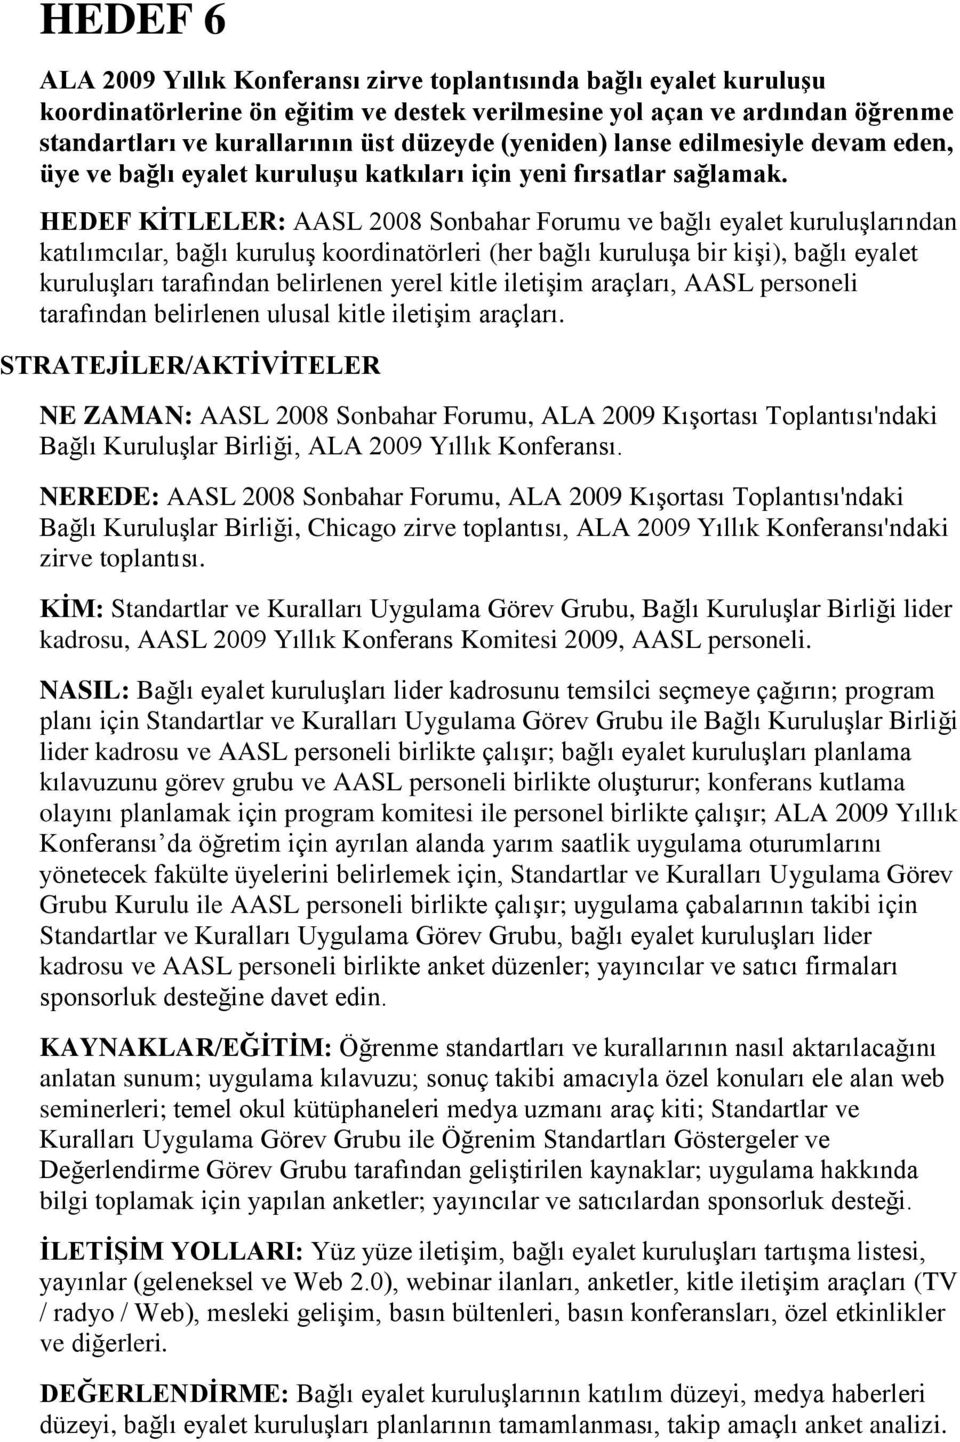 HEDEF KĠTLELER: AASL 2008 Sonbahar Forumu ve bağlı eyalet kuruluşlarından katılımcılar, bağlı kuruluş koordinatörleri (her bağlı kuruluşa bir kişi), bağlı eyalet kuruluşları tarafından belirlenen